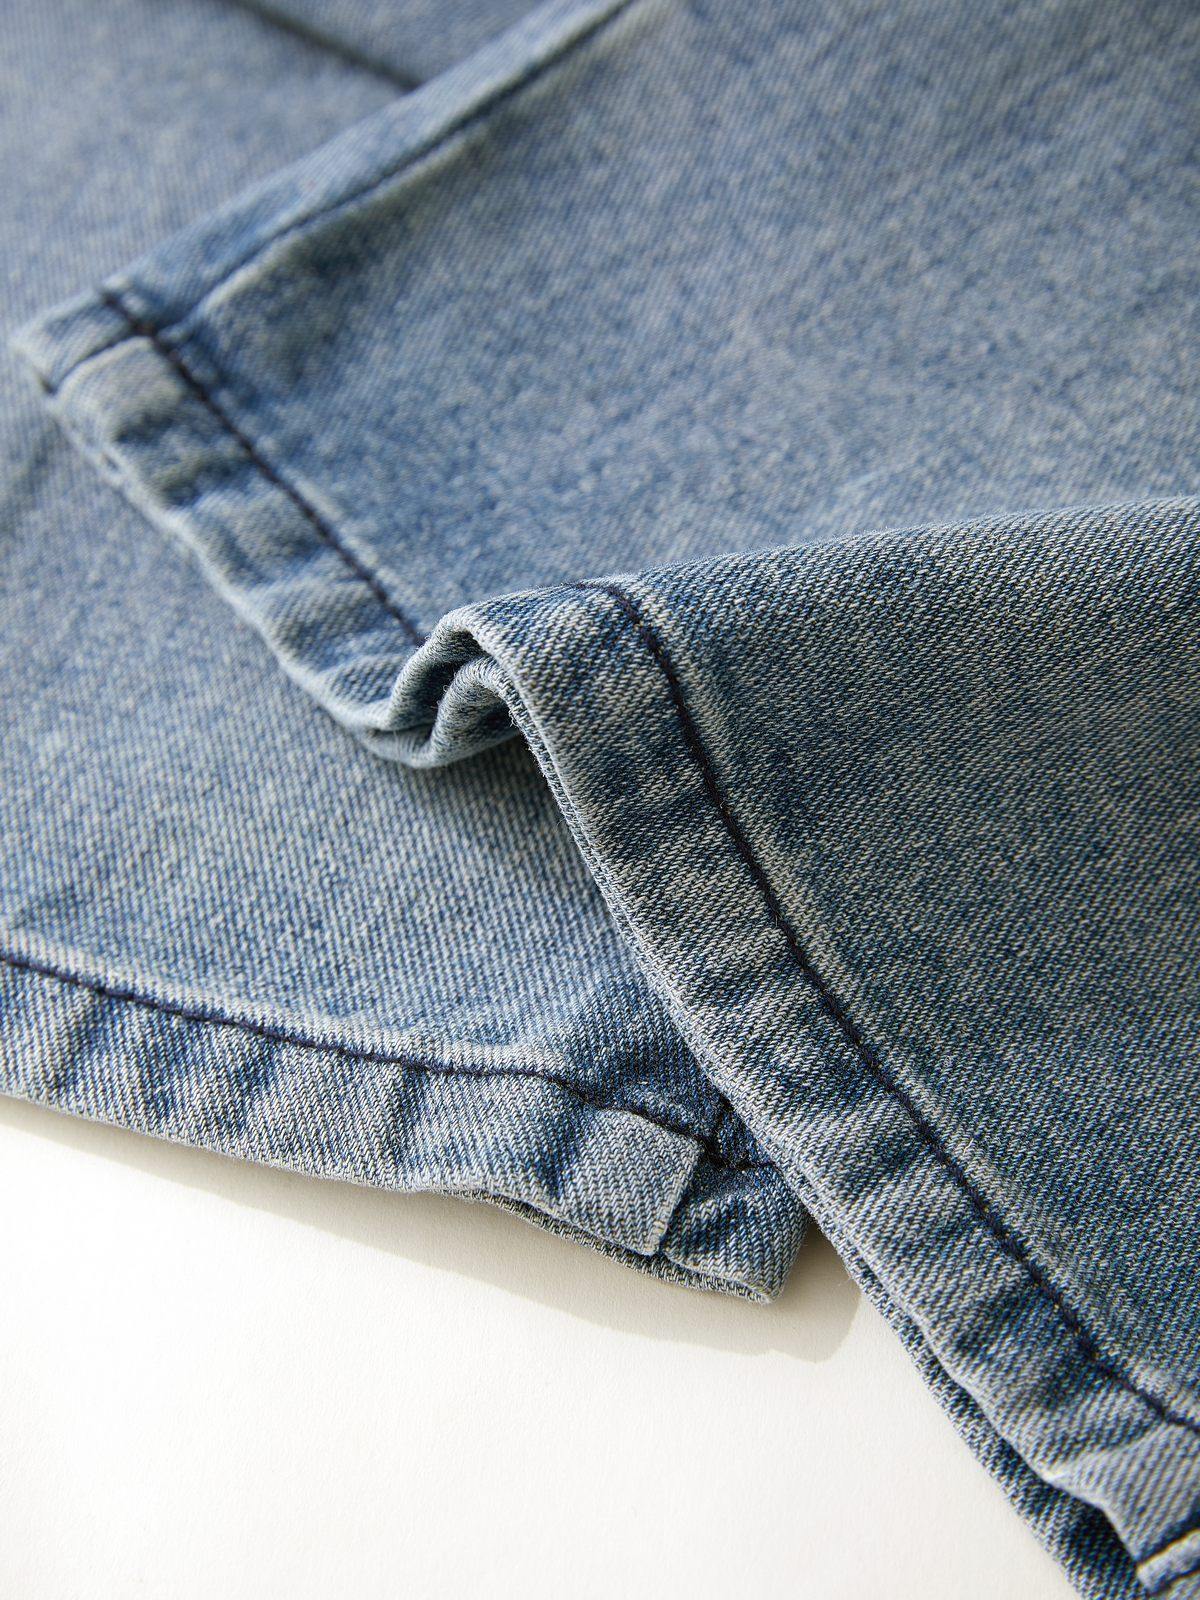 Vintage Wash Distressed Star Patch Boyfriend Jeans – Omcne